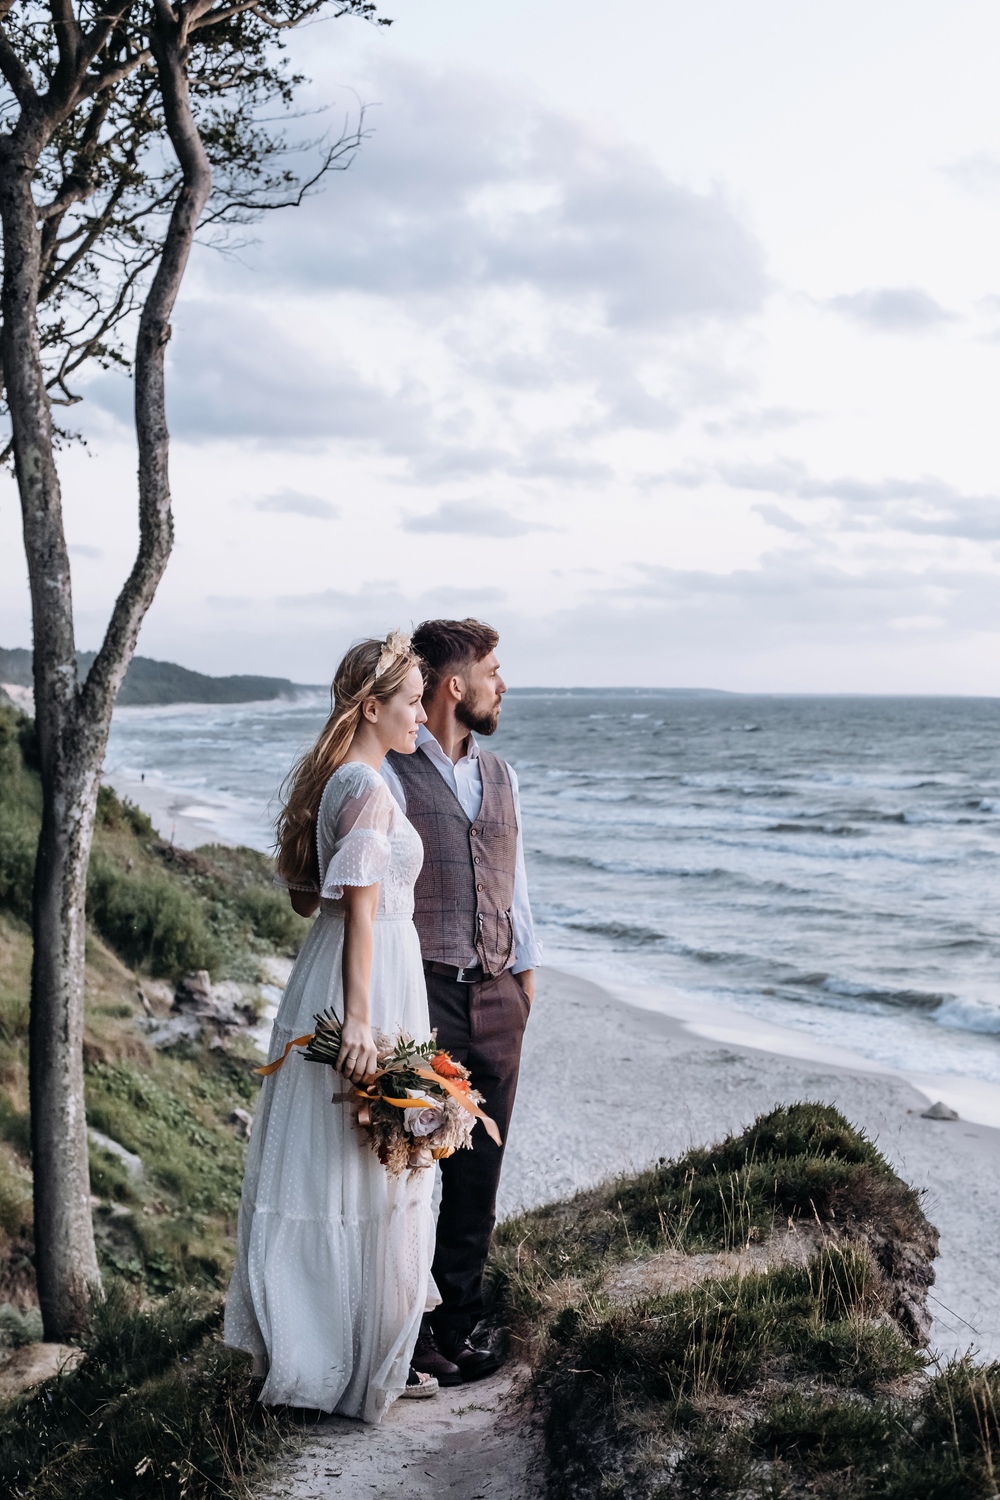 Romantyczna chwila podczas sesji ślubnej nad morzem w Poddąbiu - ujęcie pełne